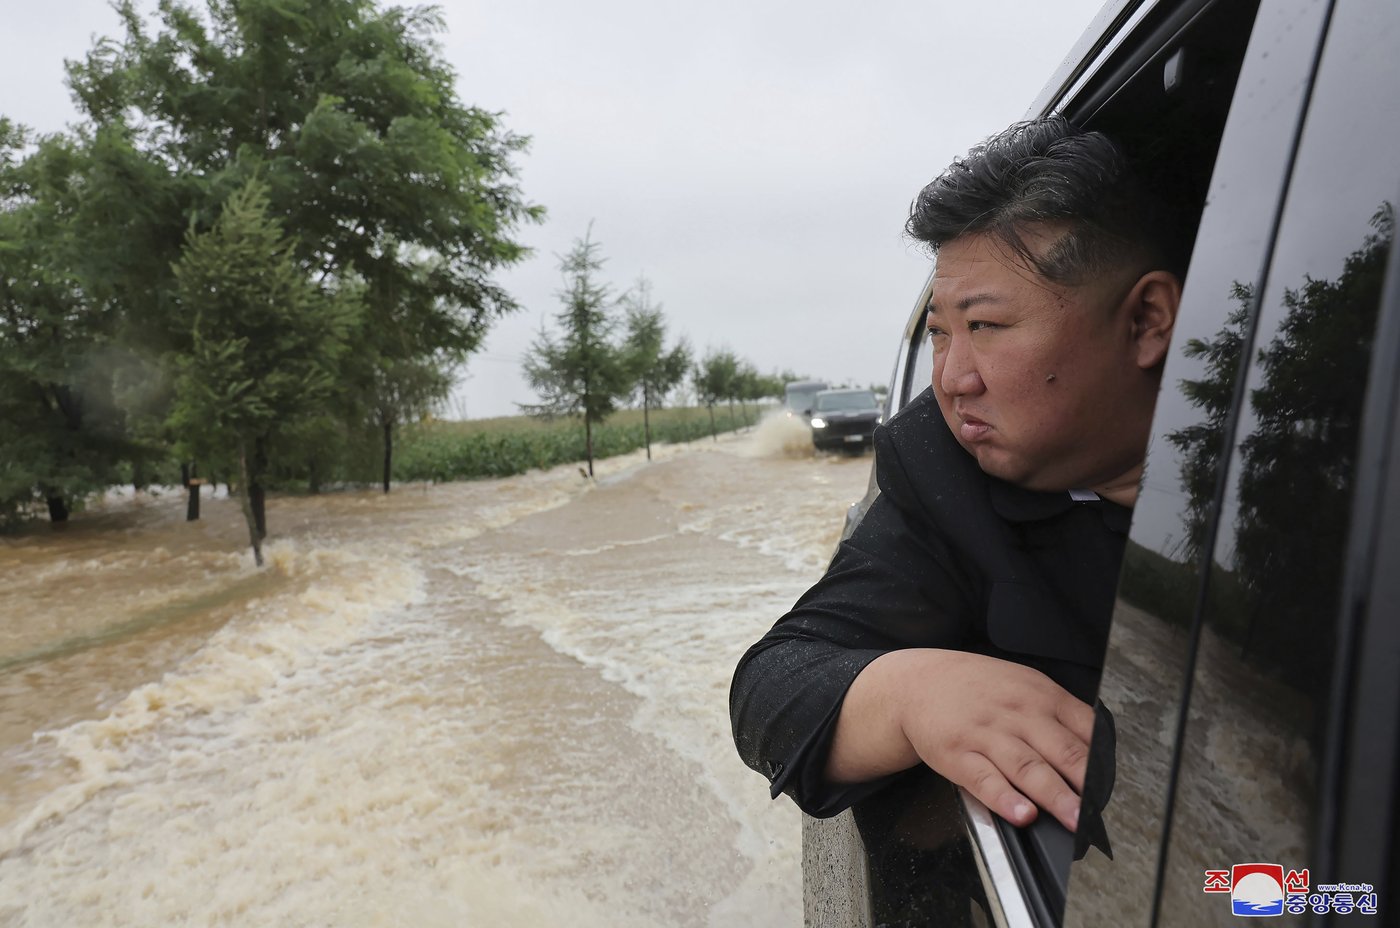 Kim Jong Un a sauvé 5000 personnes des inondations, selon l’agence de presse du pays